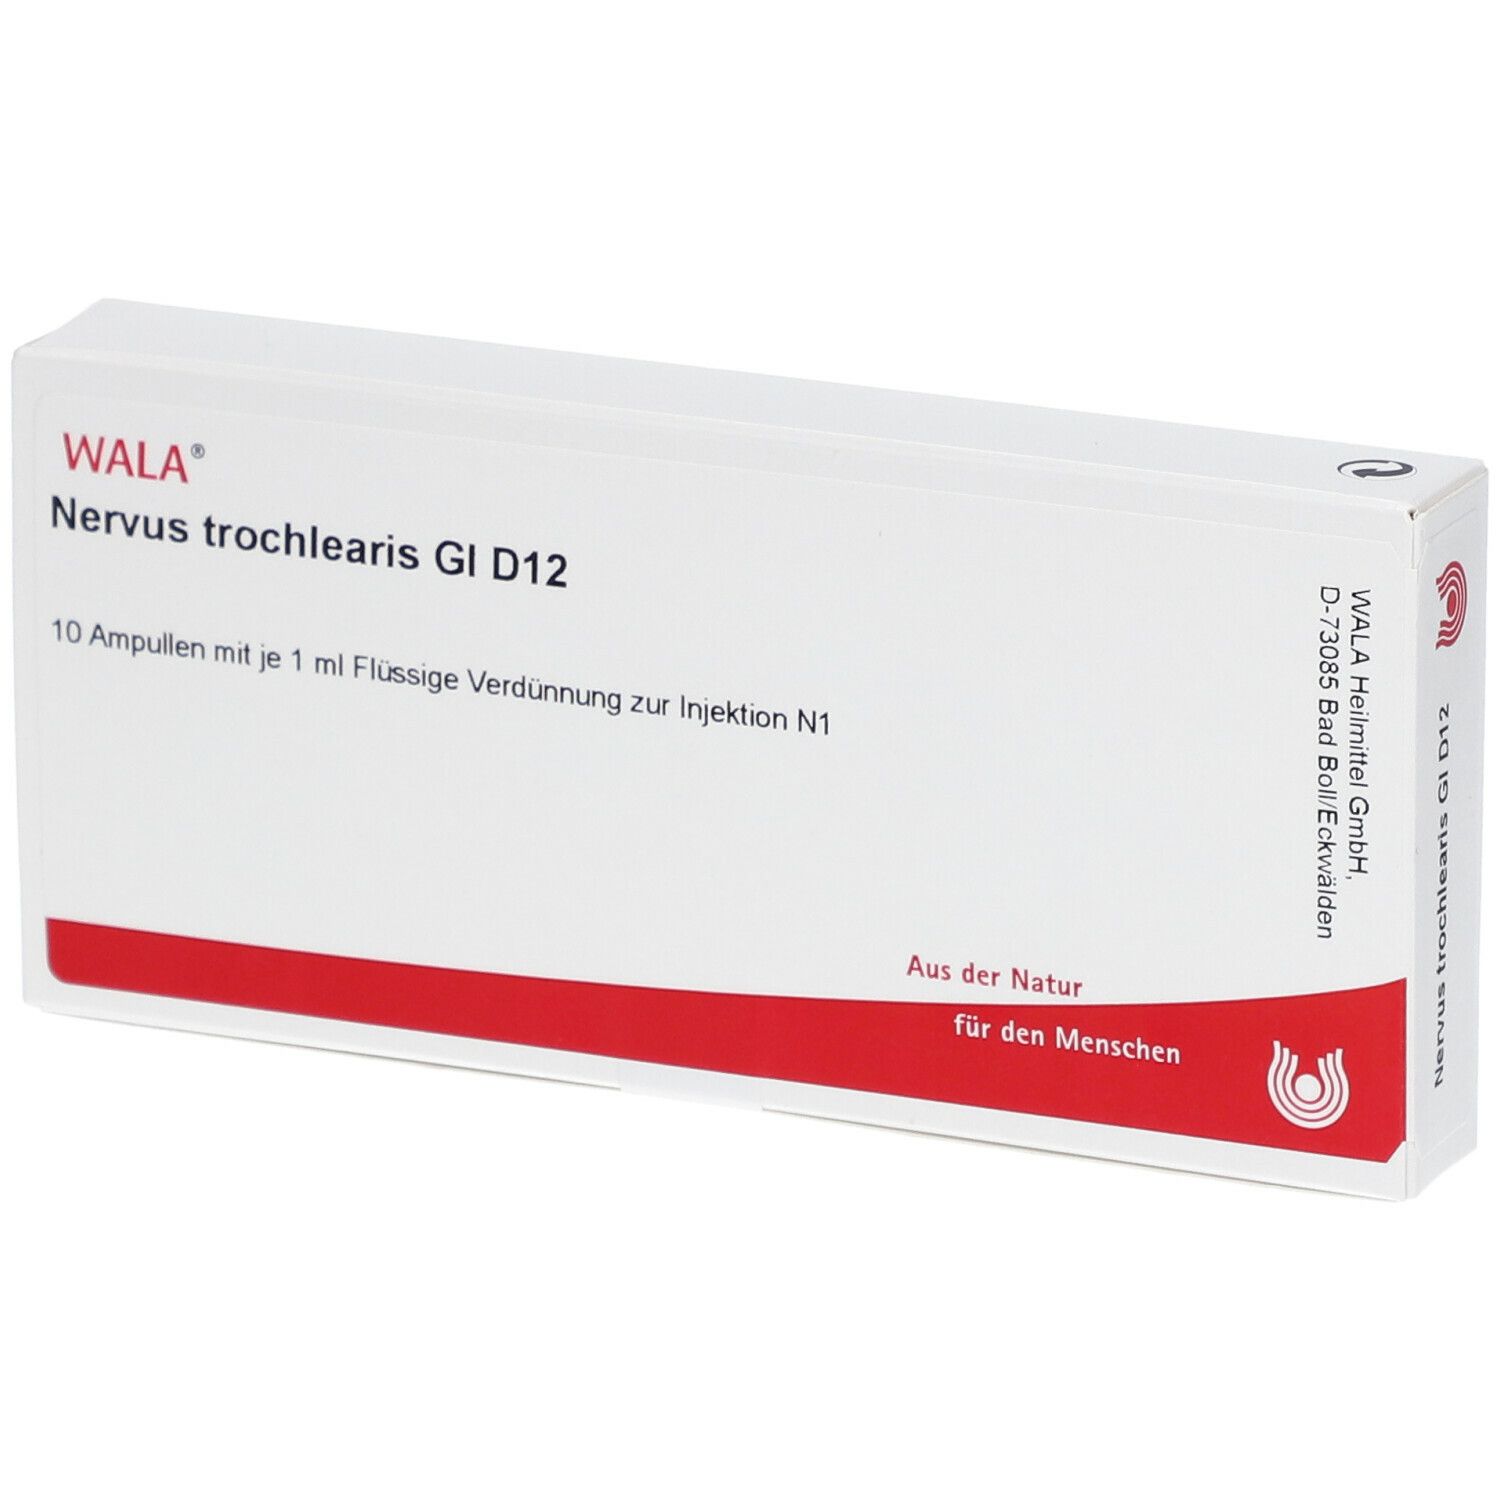 WALA® Nervus trochlearis Gl D 12